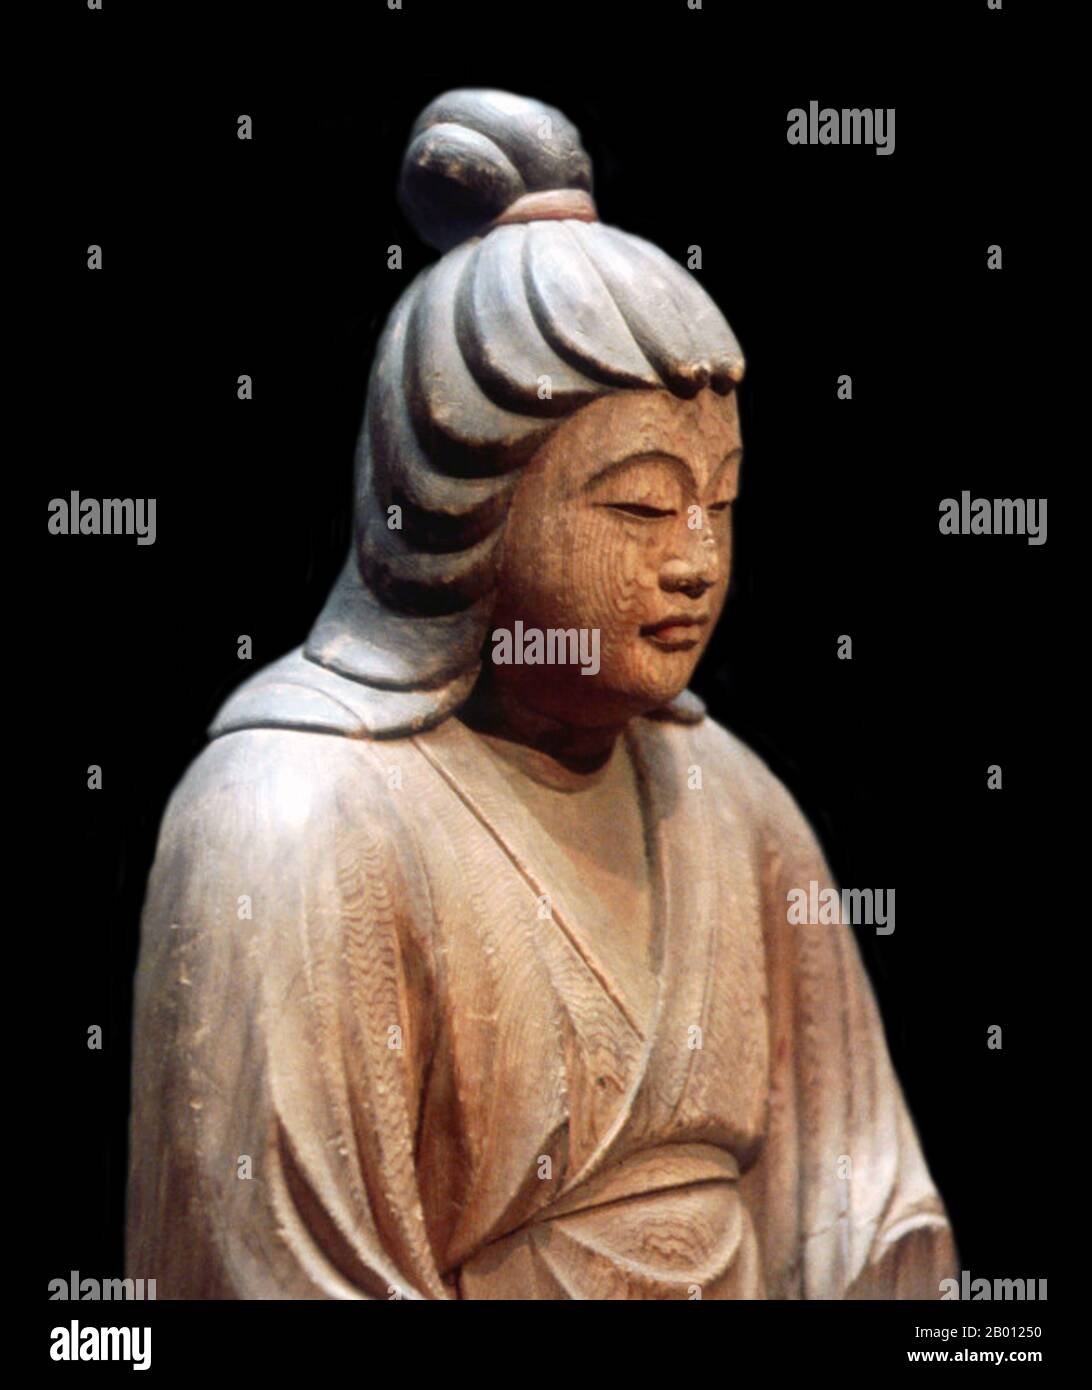 Giappone: Imperatrice Jingū (r. 209 - 269 CE). Scultura in legno di Ko-Kaku (fl. 14 ° secolo), Santuario di Hatimangu, prefettura di Shimane, c. 1326. Foto di Reiji Yamashina (licenza CC BY-SA 3.0). Empress Jingū (c. 169-269 CE) fu consorte all'Imperatore Chuai, e servì come Reggente dal momento della morte del marito nel 209 fino a quando il figlio Imperatore Ōjin aderì al trono nel 269. Non si possono dare date ferme alla vita o al regno di questa figura. Jingū è considerata dagli storici come una figura 'leggendaria' a causa della mancanza di informazioni su di lei. La leggenda vuole che lei condusse un'invasione della Corea e tornò vittoriosa. Foto Stock